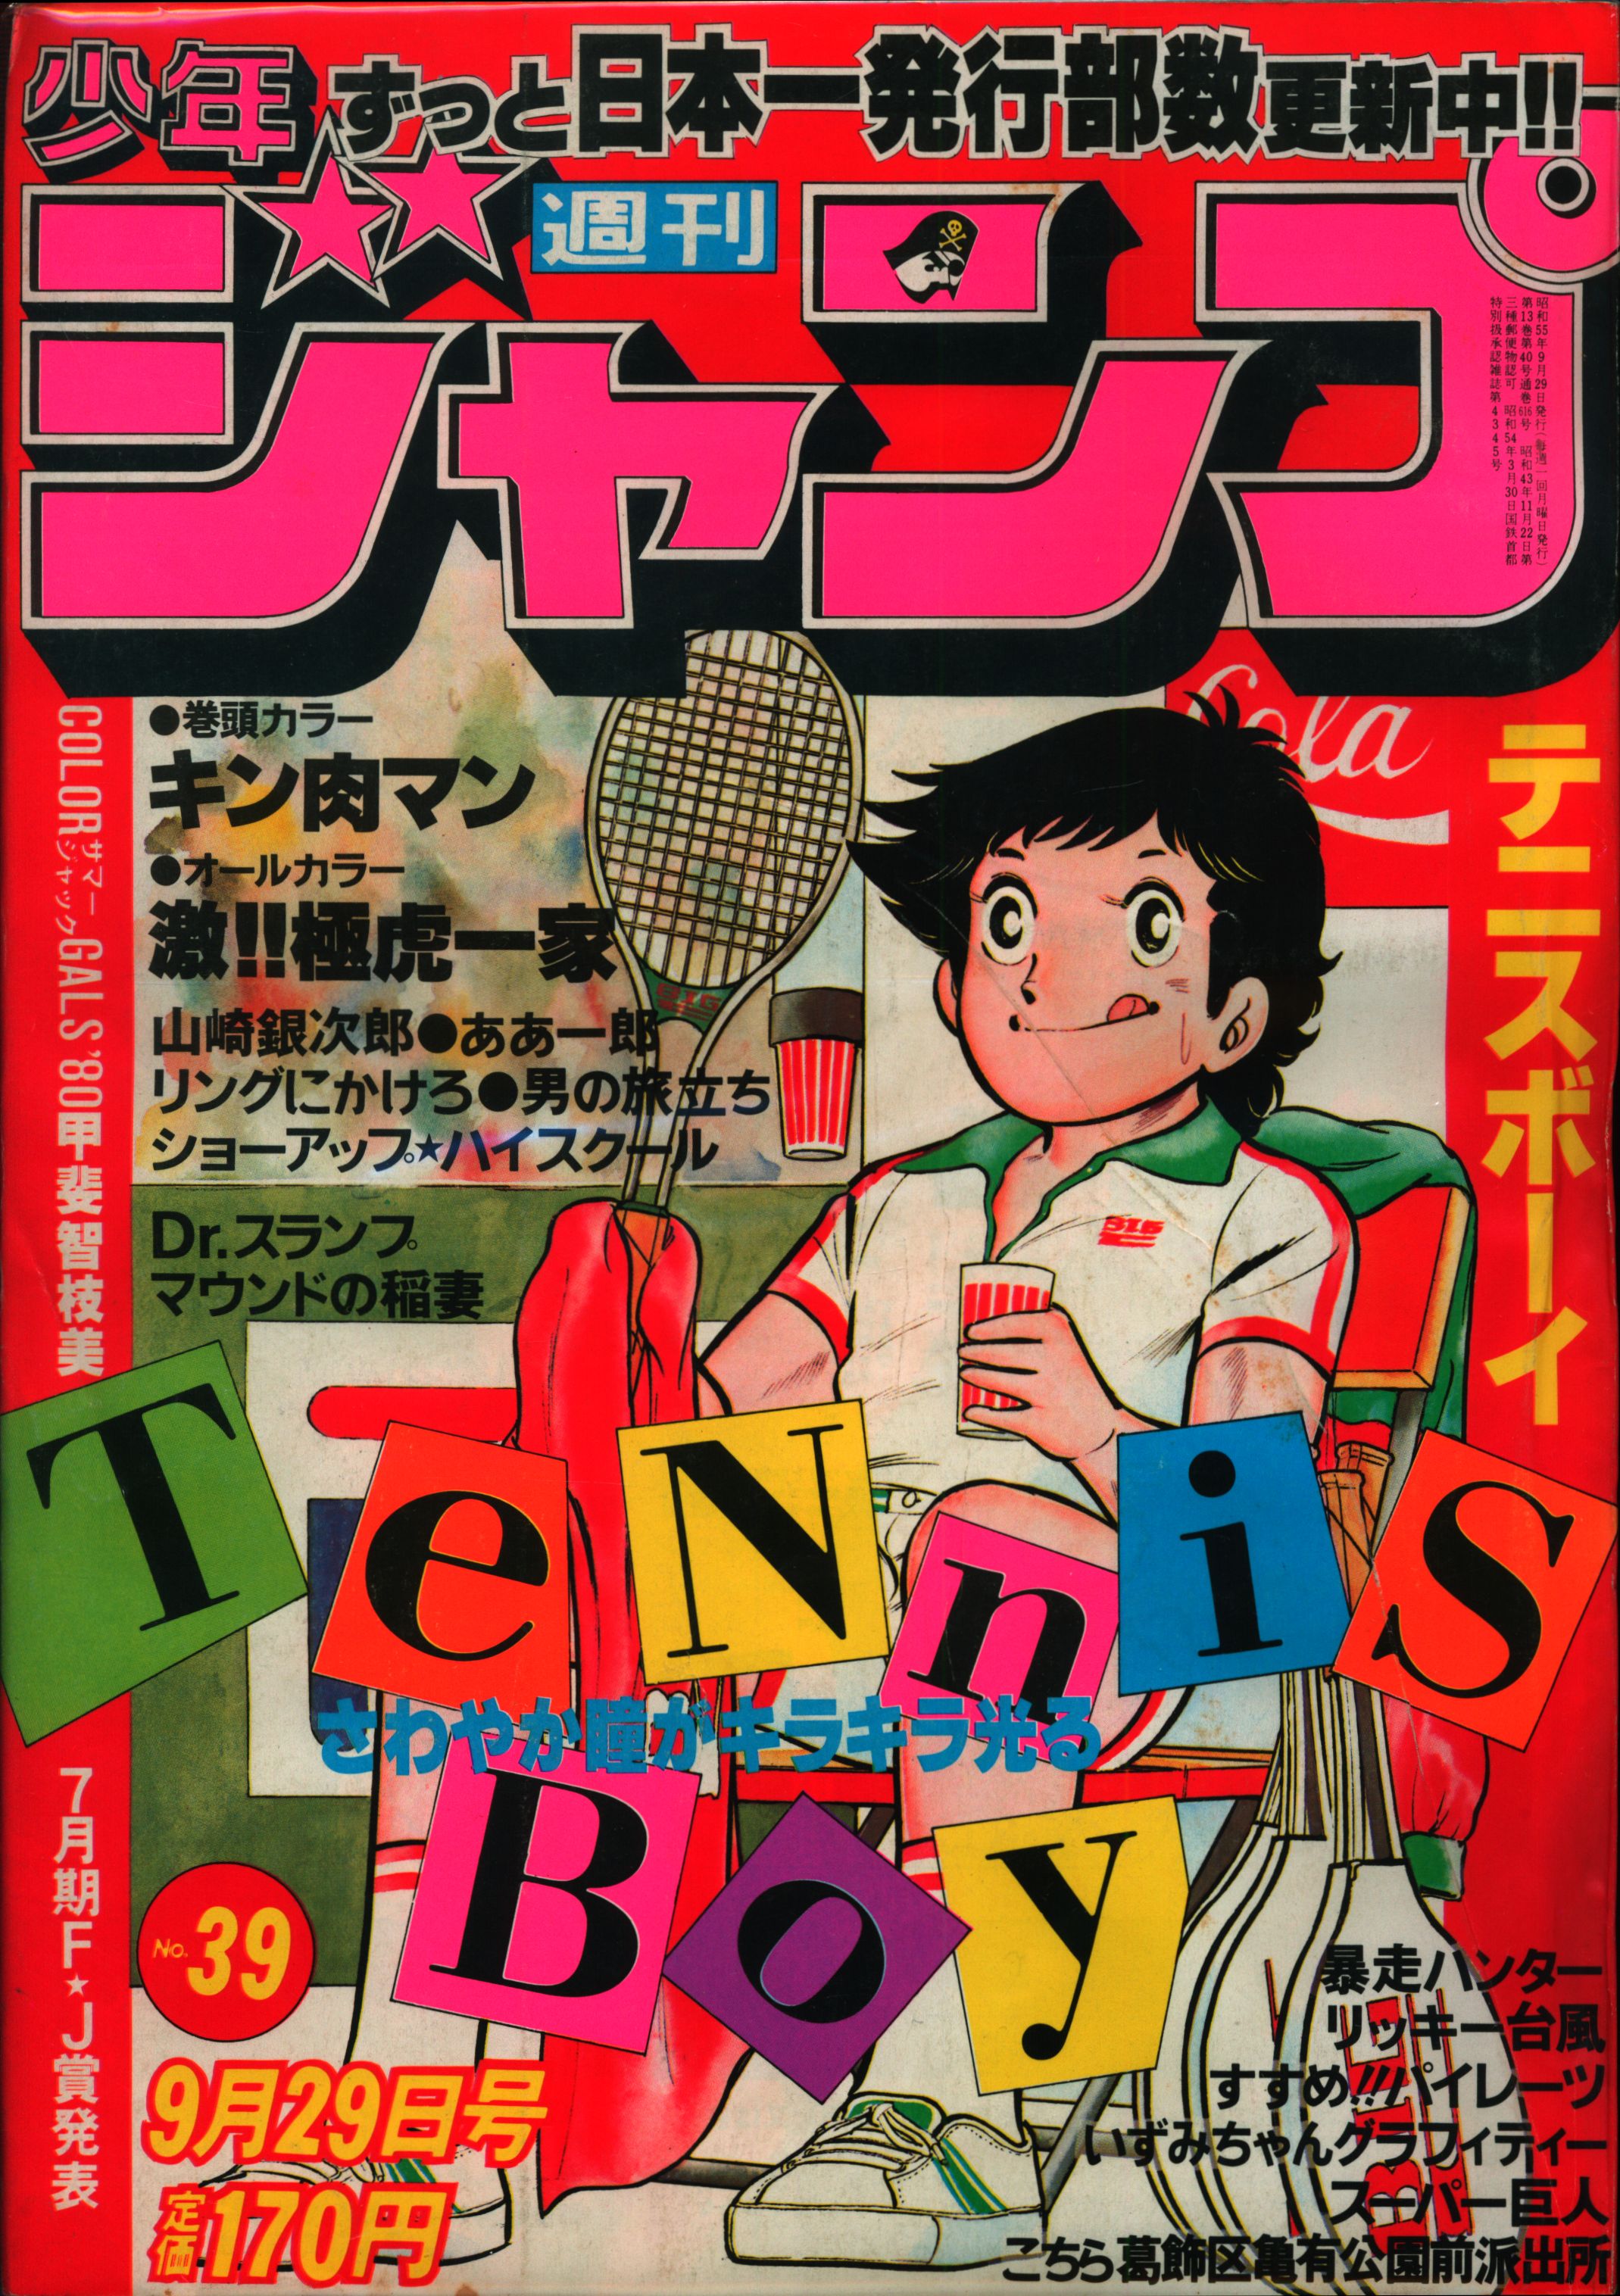 週刊少年ジャンプ 1980年 28号 no.28 漫画雑誌 集英社 キン肉マン